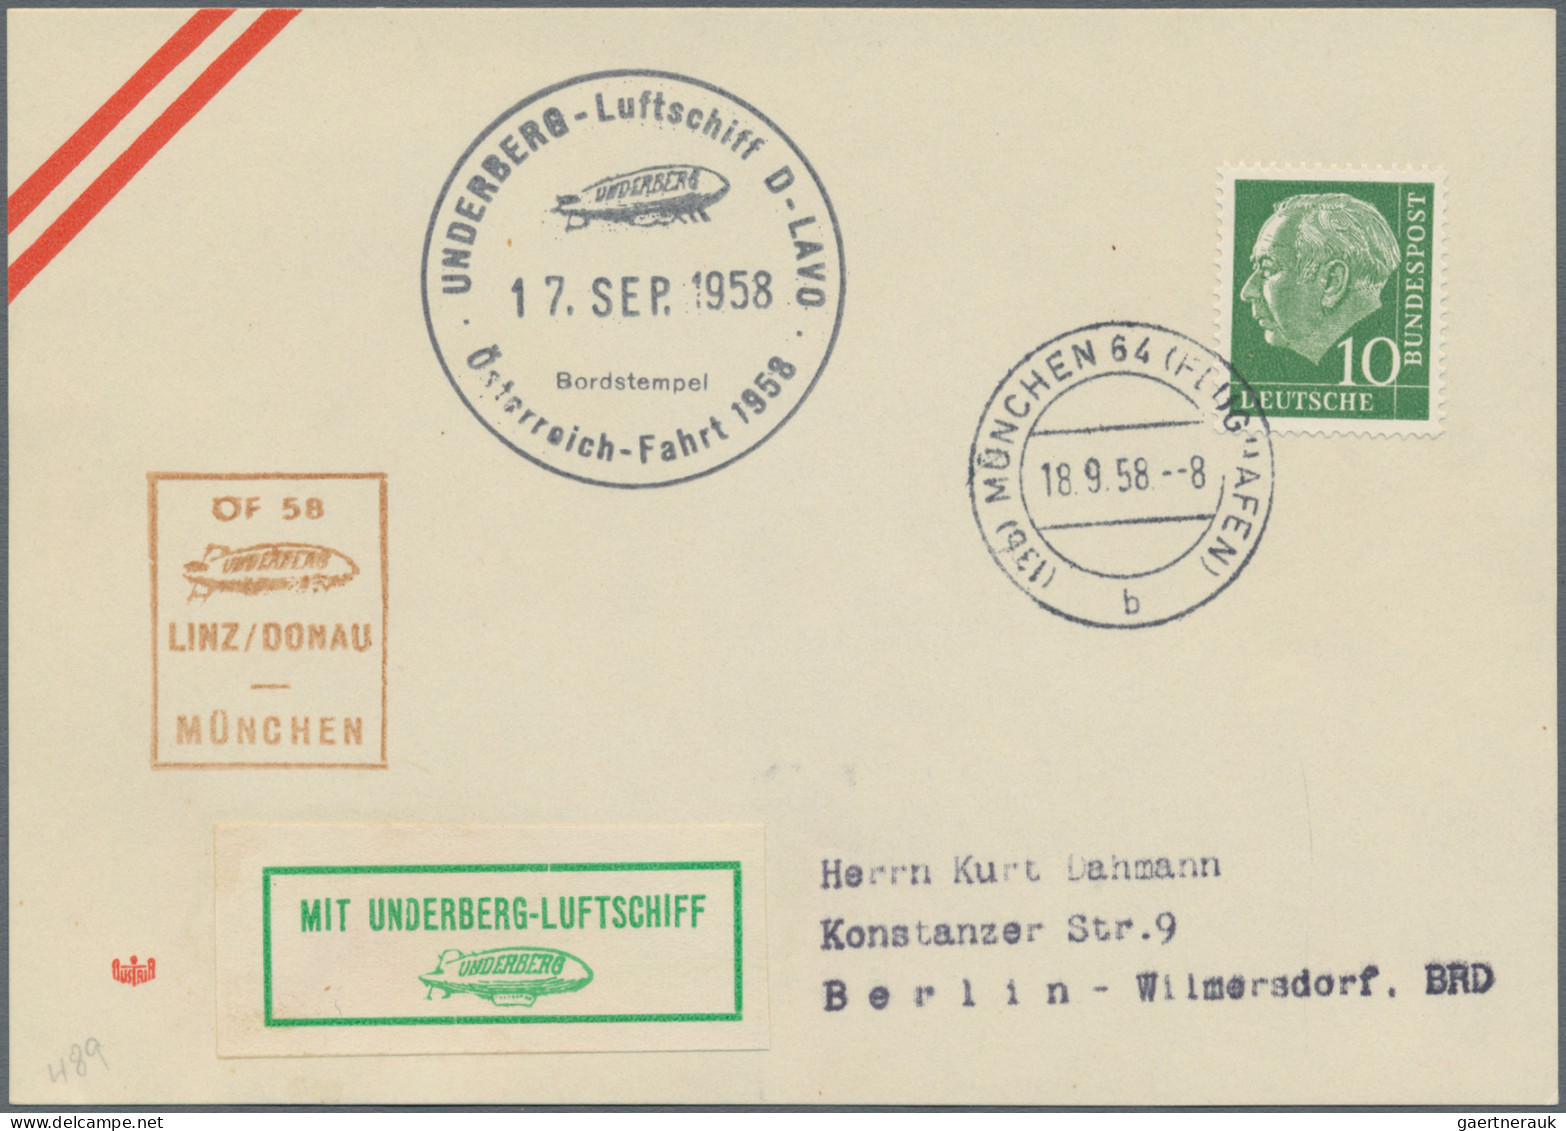 Air Mail: 1915-1985 (ca), Sammlung von 48 Belegen im Ringalbum, Flugpost bzw. Ze